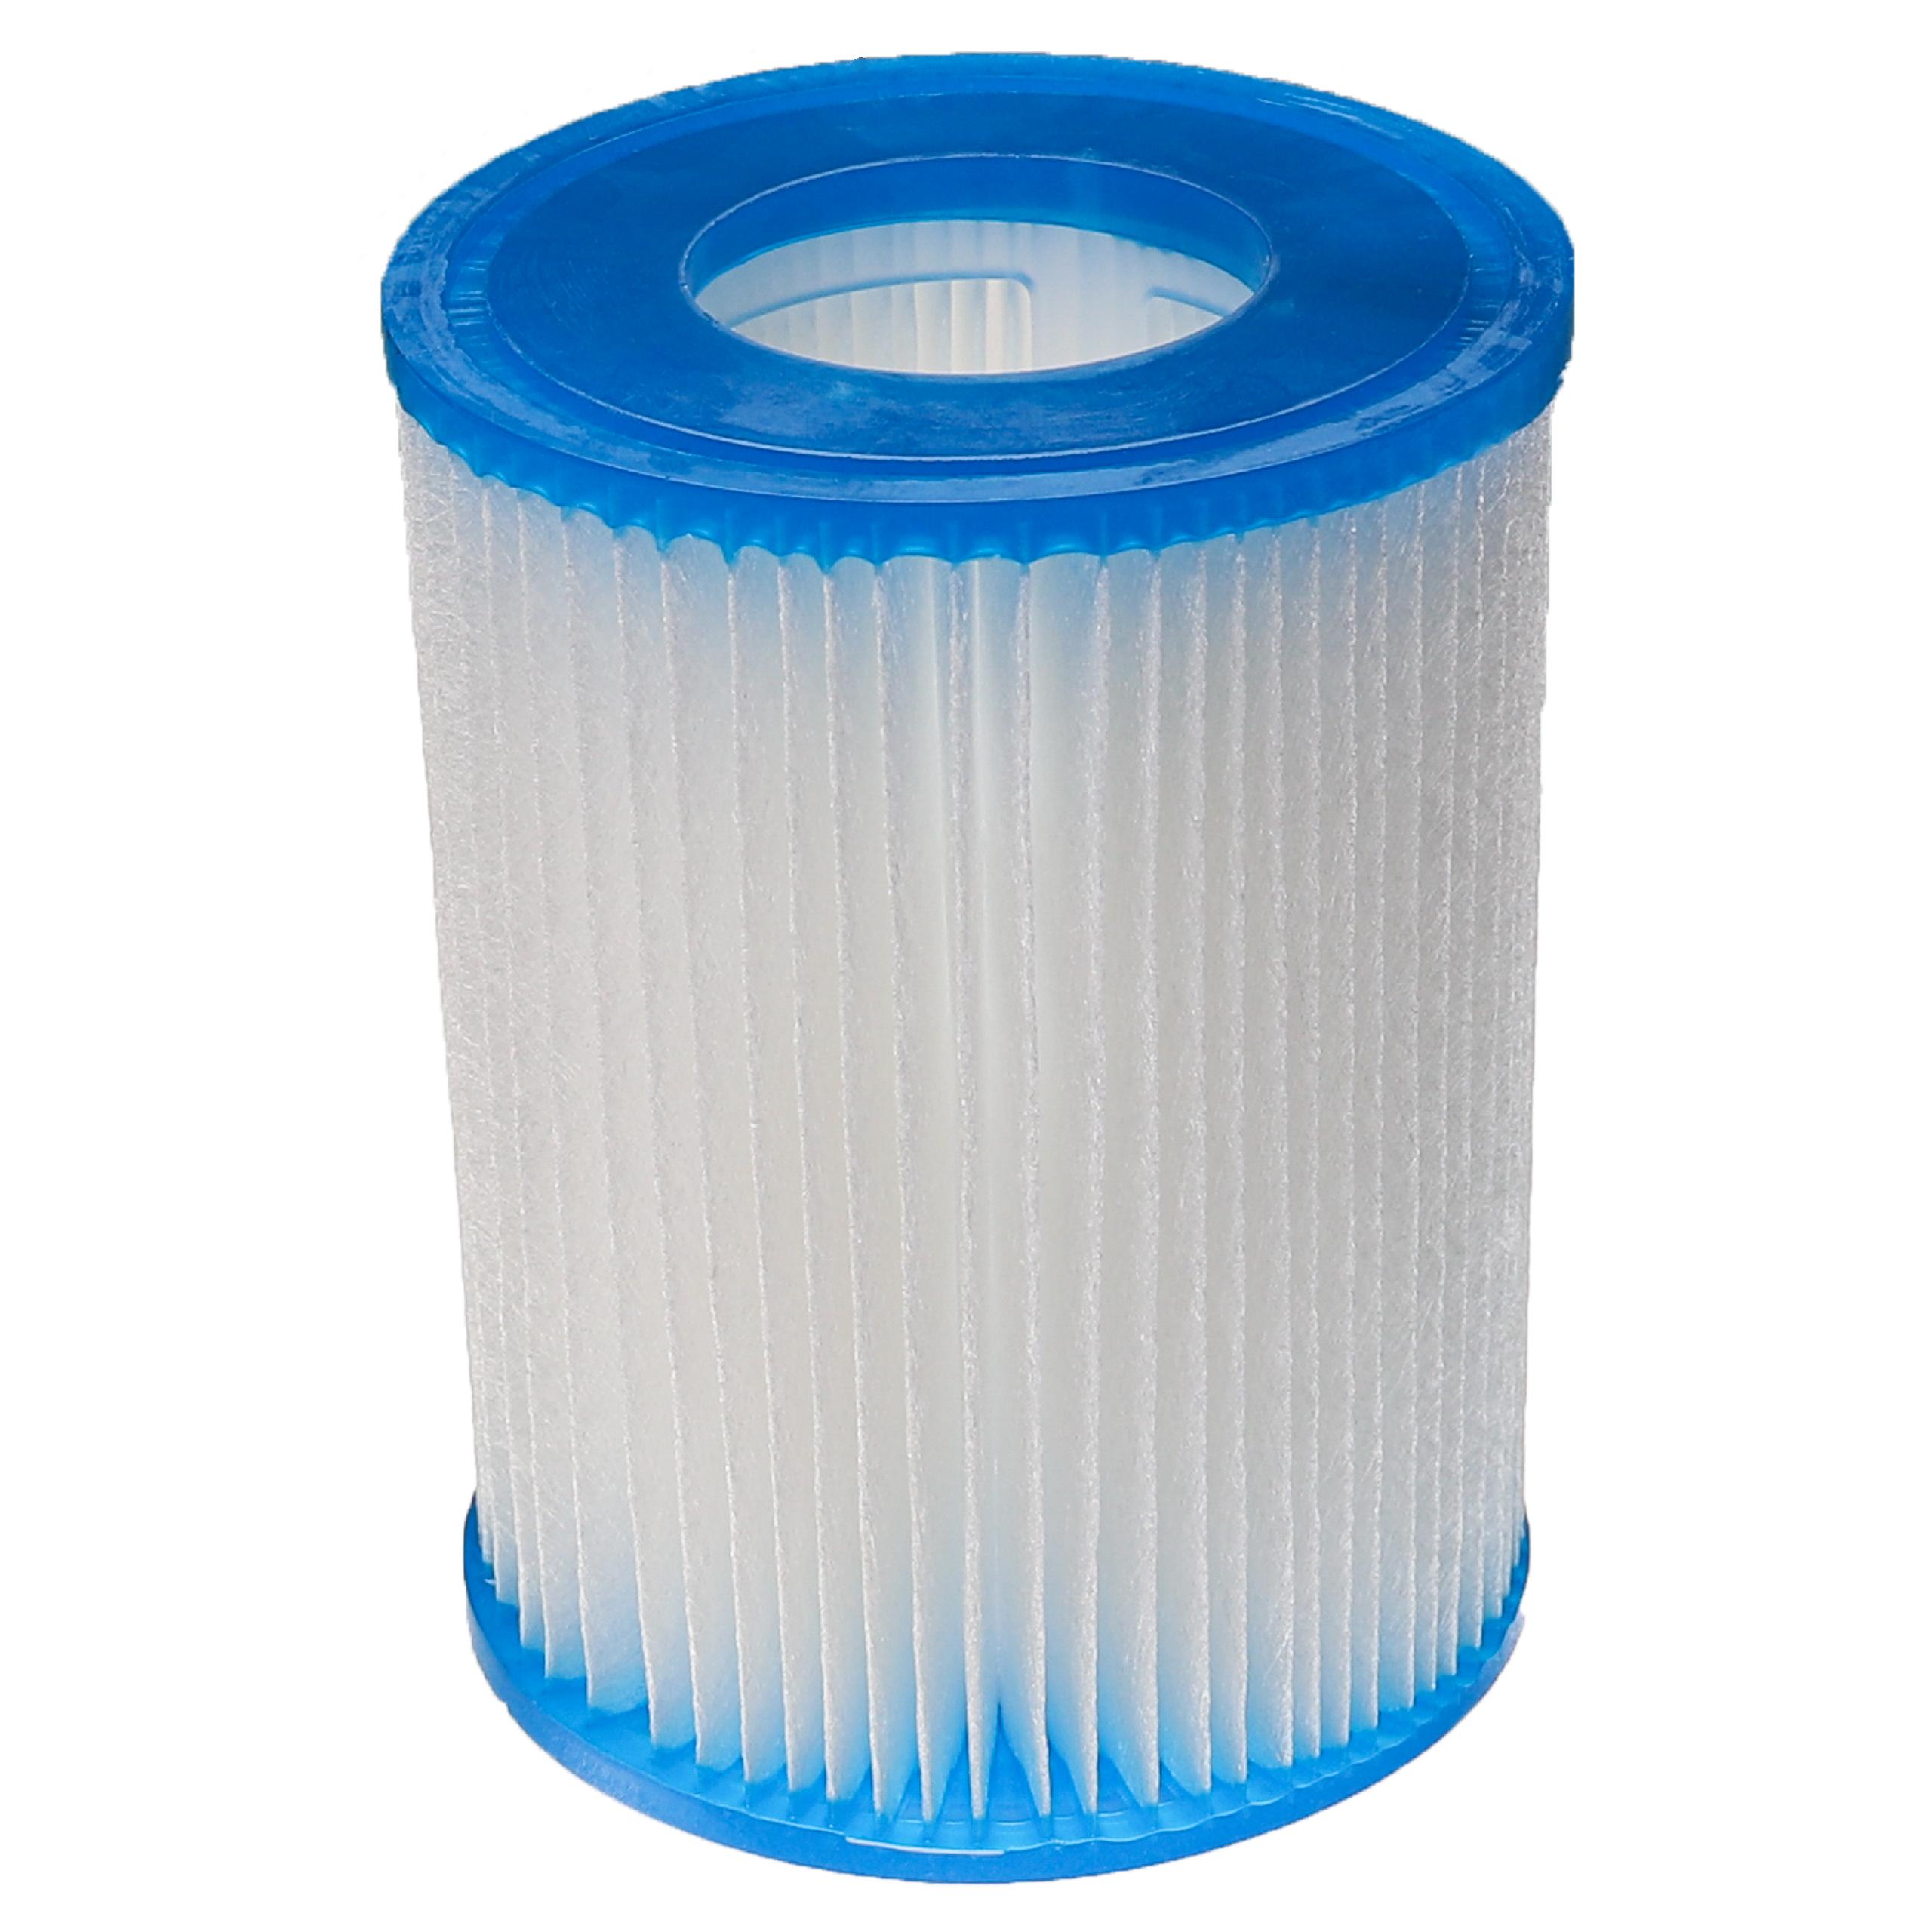 filtro de agua reemplaza Bestway FD2137, Typ II para piscina y bomba de filtro Bestway - Cartucho de filtro